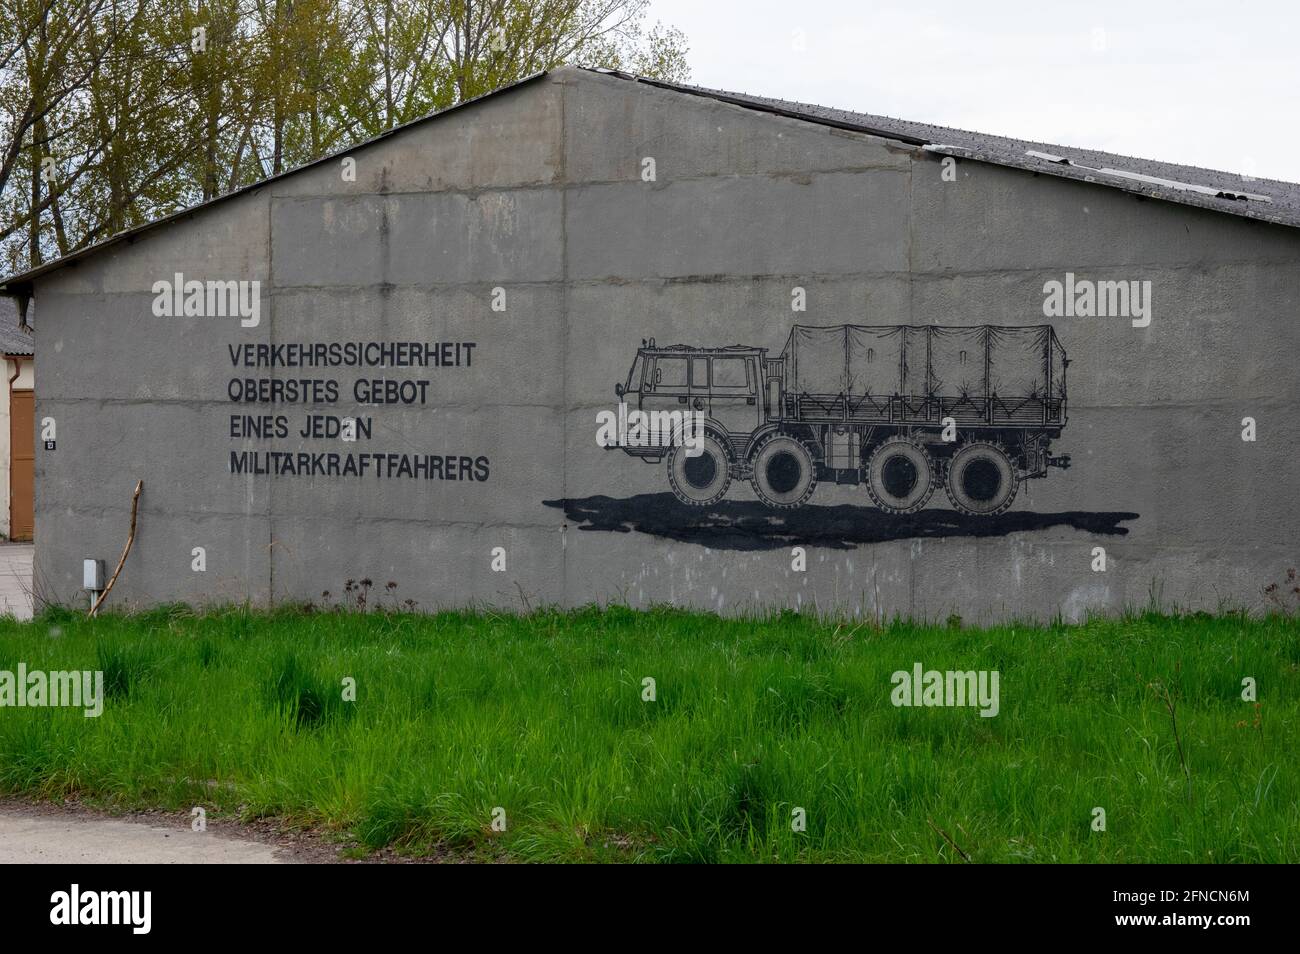 Façade de l'ancien garage militaire GDR NVA. Le texte allemand se traduit par « la sécurité routière, la priorité absolue de chaque conducteur militaire ». Banque D'Images